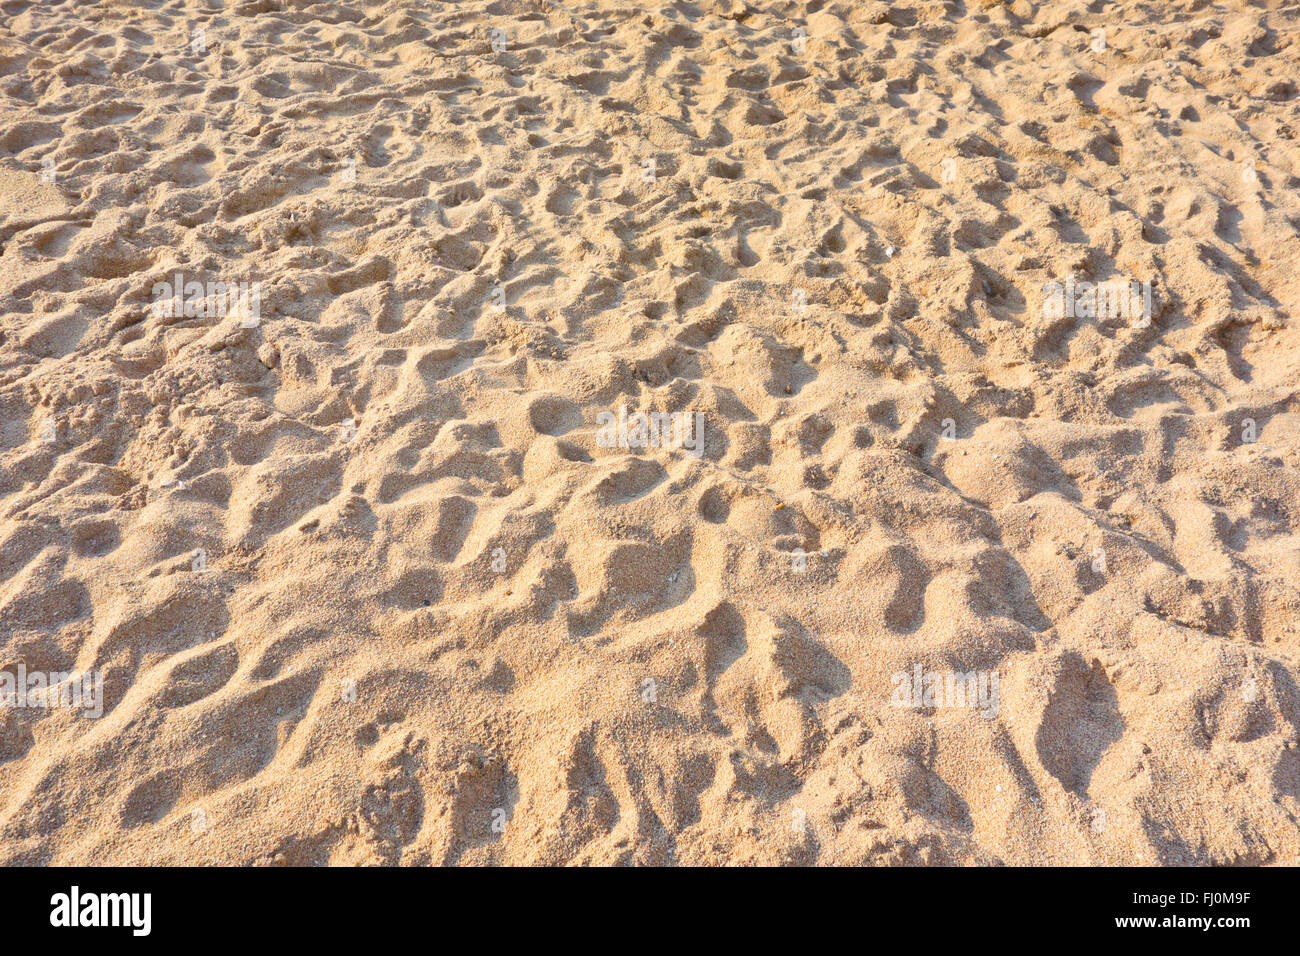 Une image de sable de plage Banque D'Images